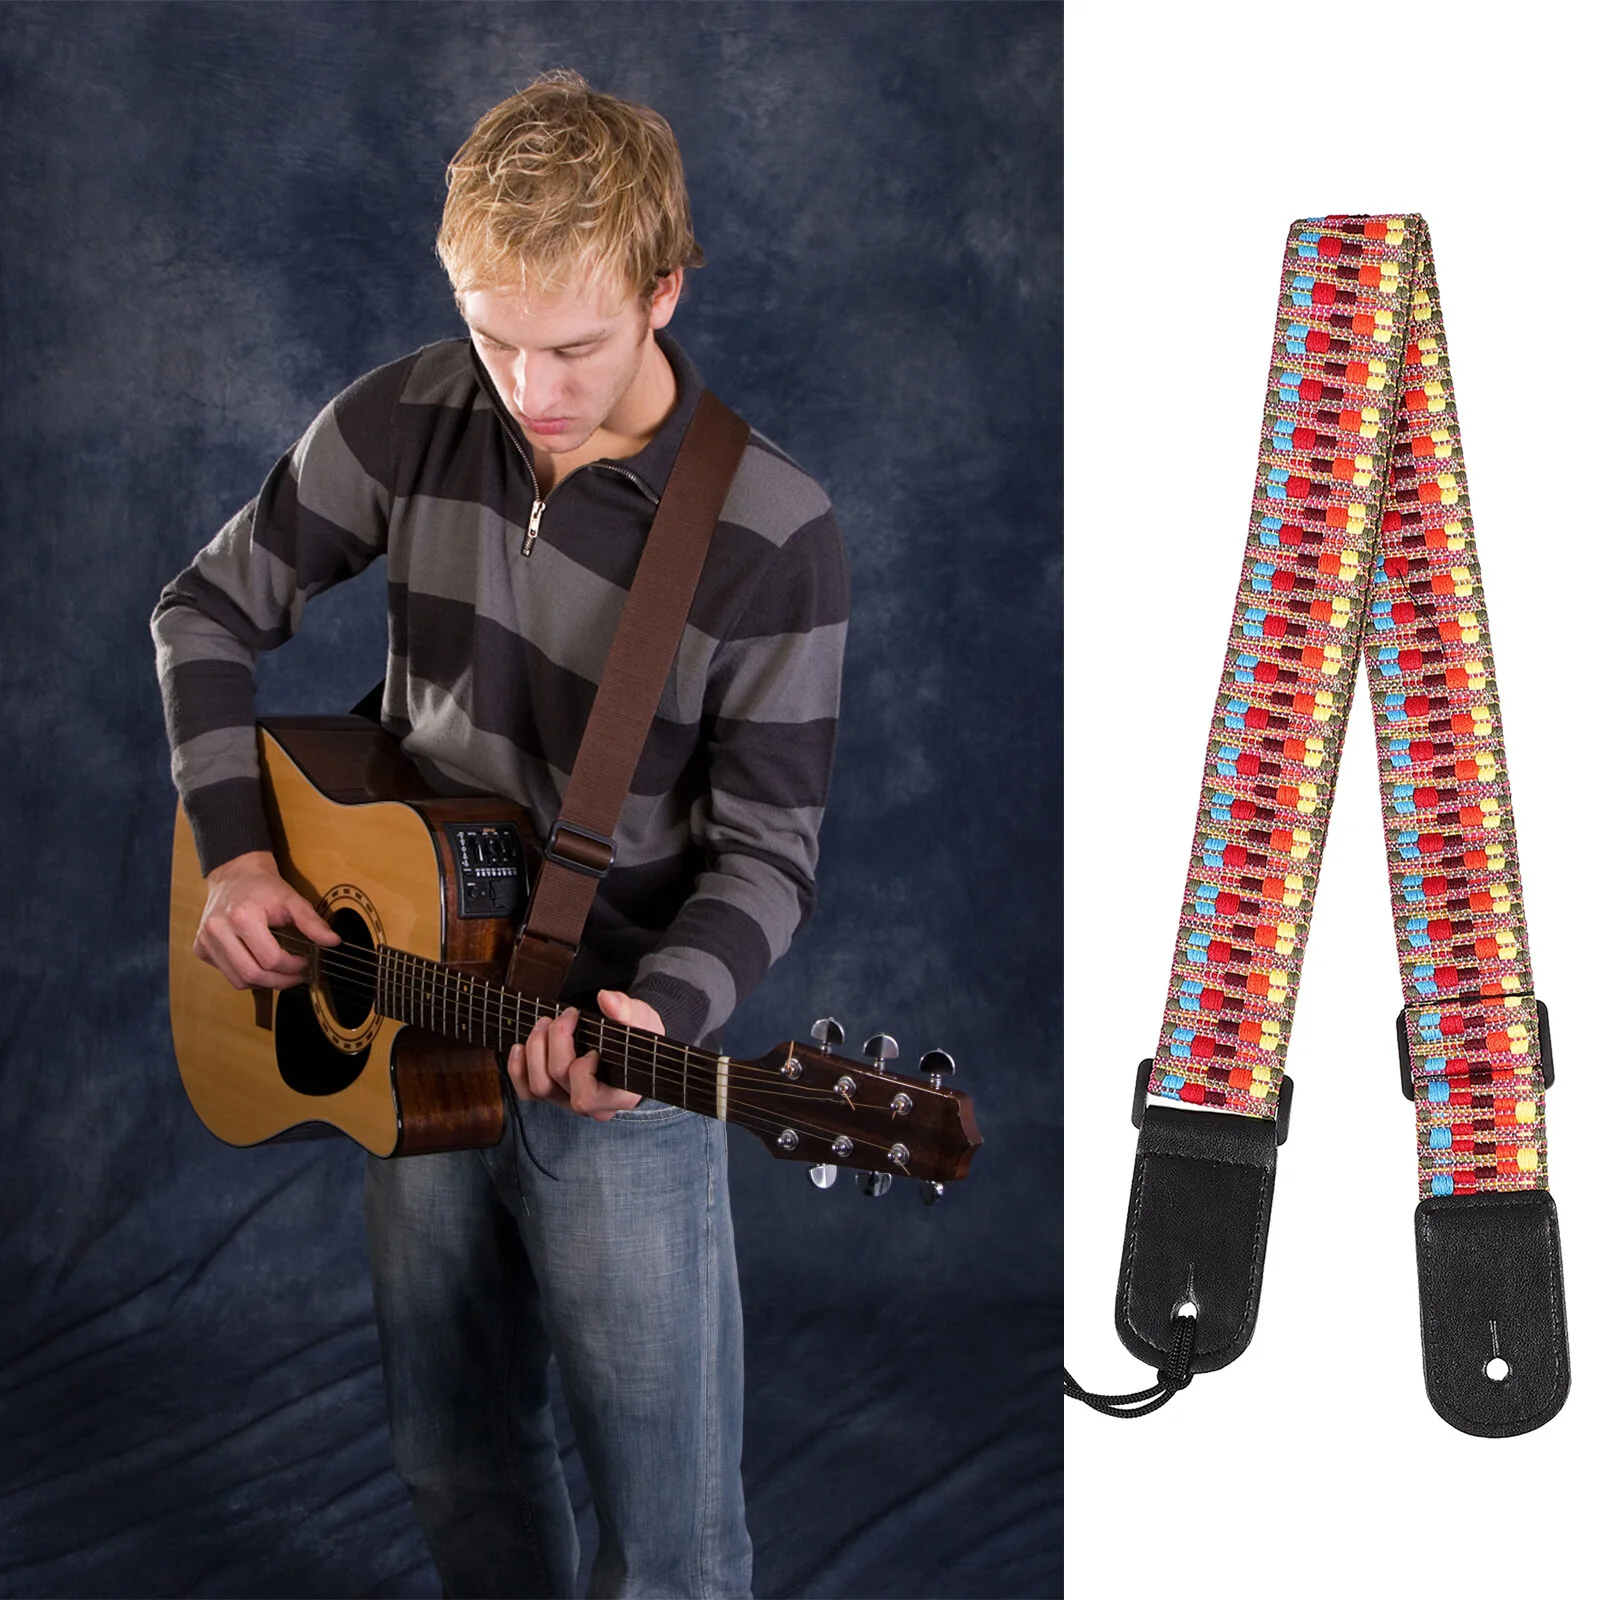 

Музыкальный инструмент, ремень без пряжки, укулеле, наплечный ремень, строп для балладной гитары из полиэстера, регулируемый шейный